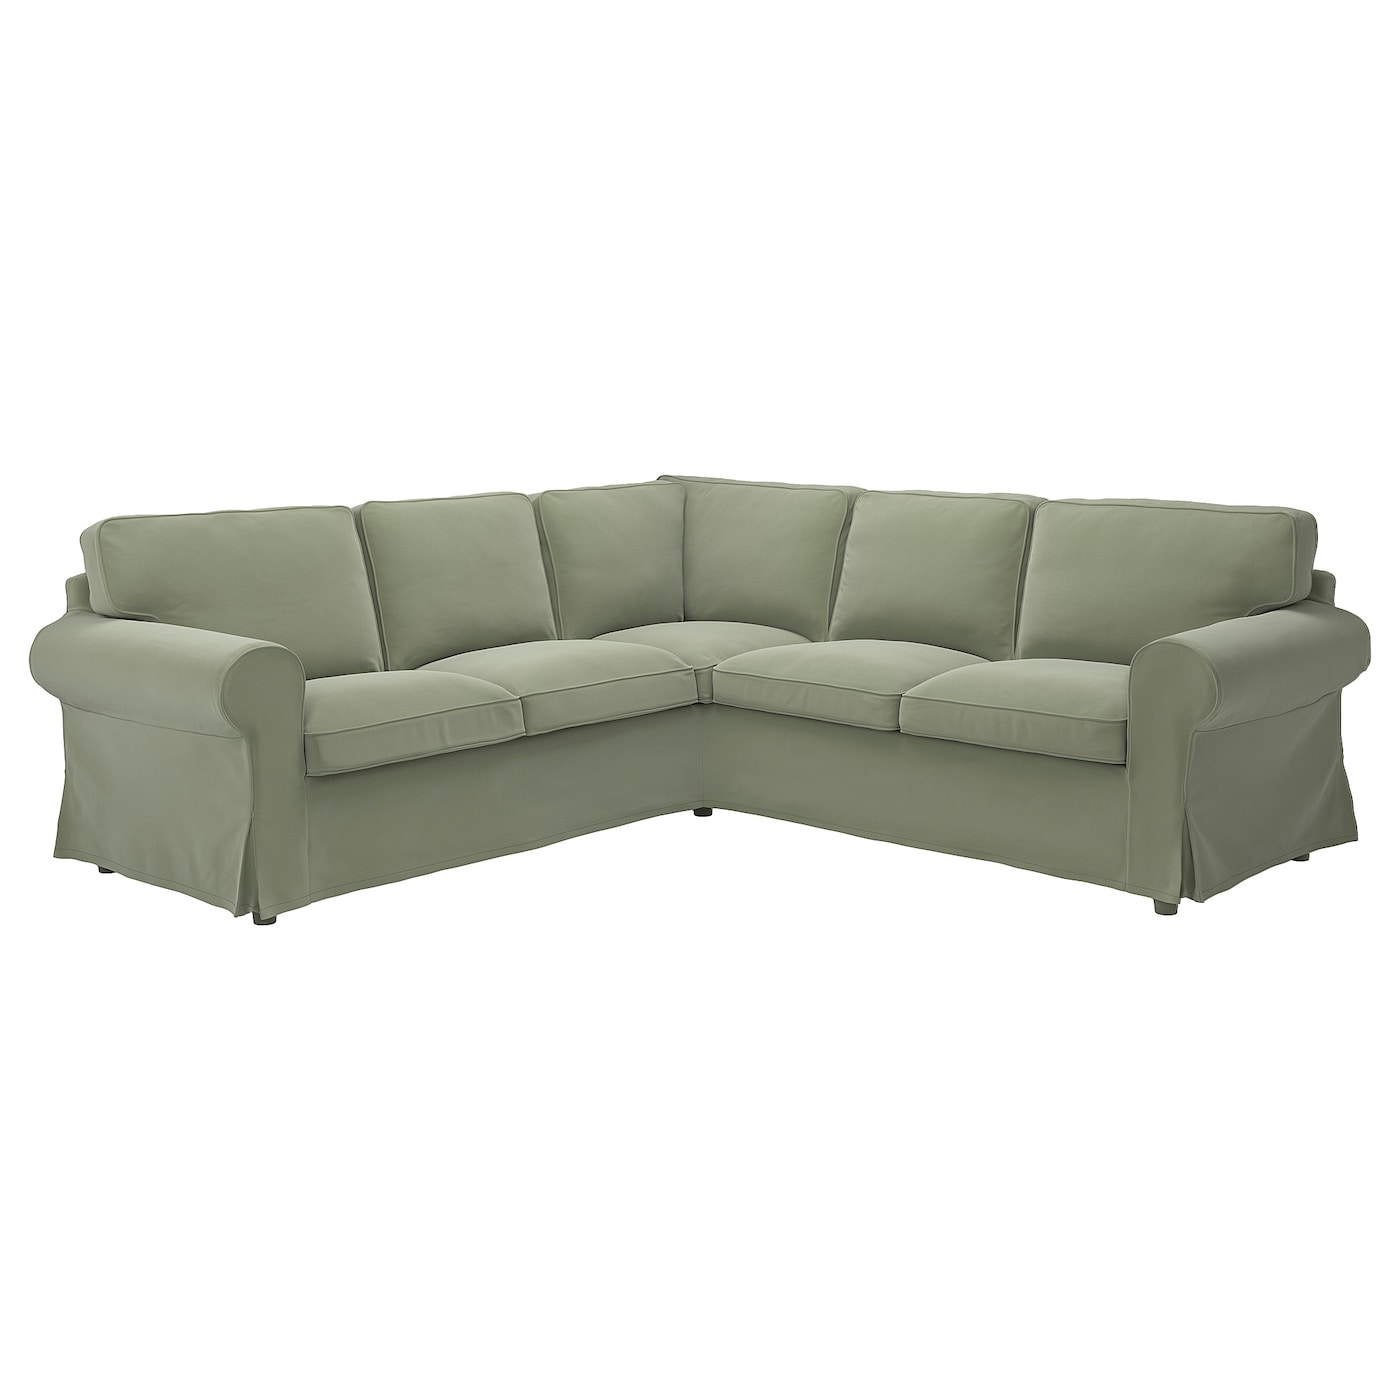 4-местный угловой диван - IKEA EKTORP, 88x243см, светло-зеленый, ЭКТОРП ИКЕА